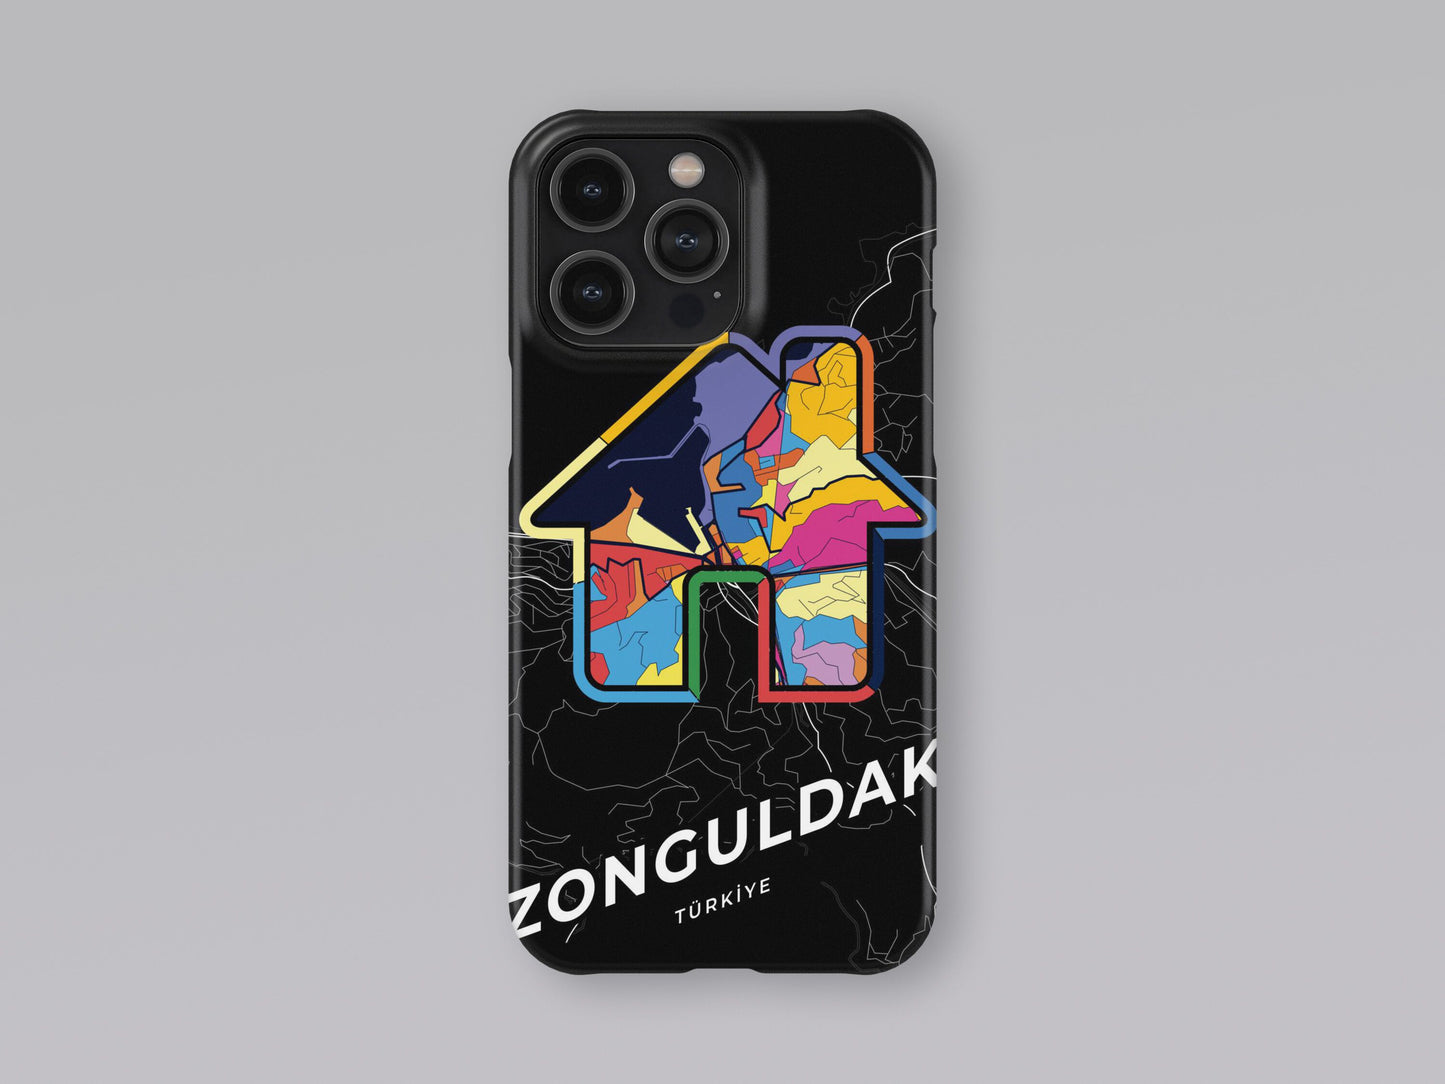 Zonguldak Turkey slim phone case with colorful icon 3